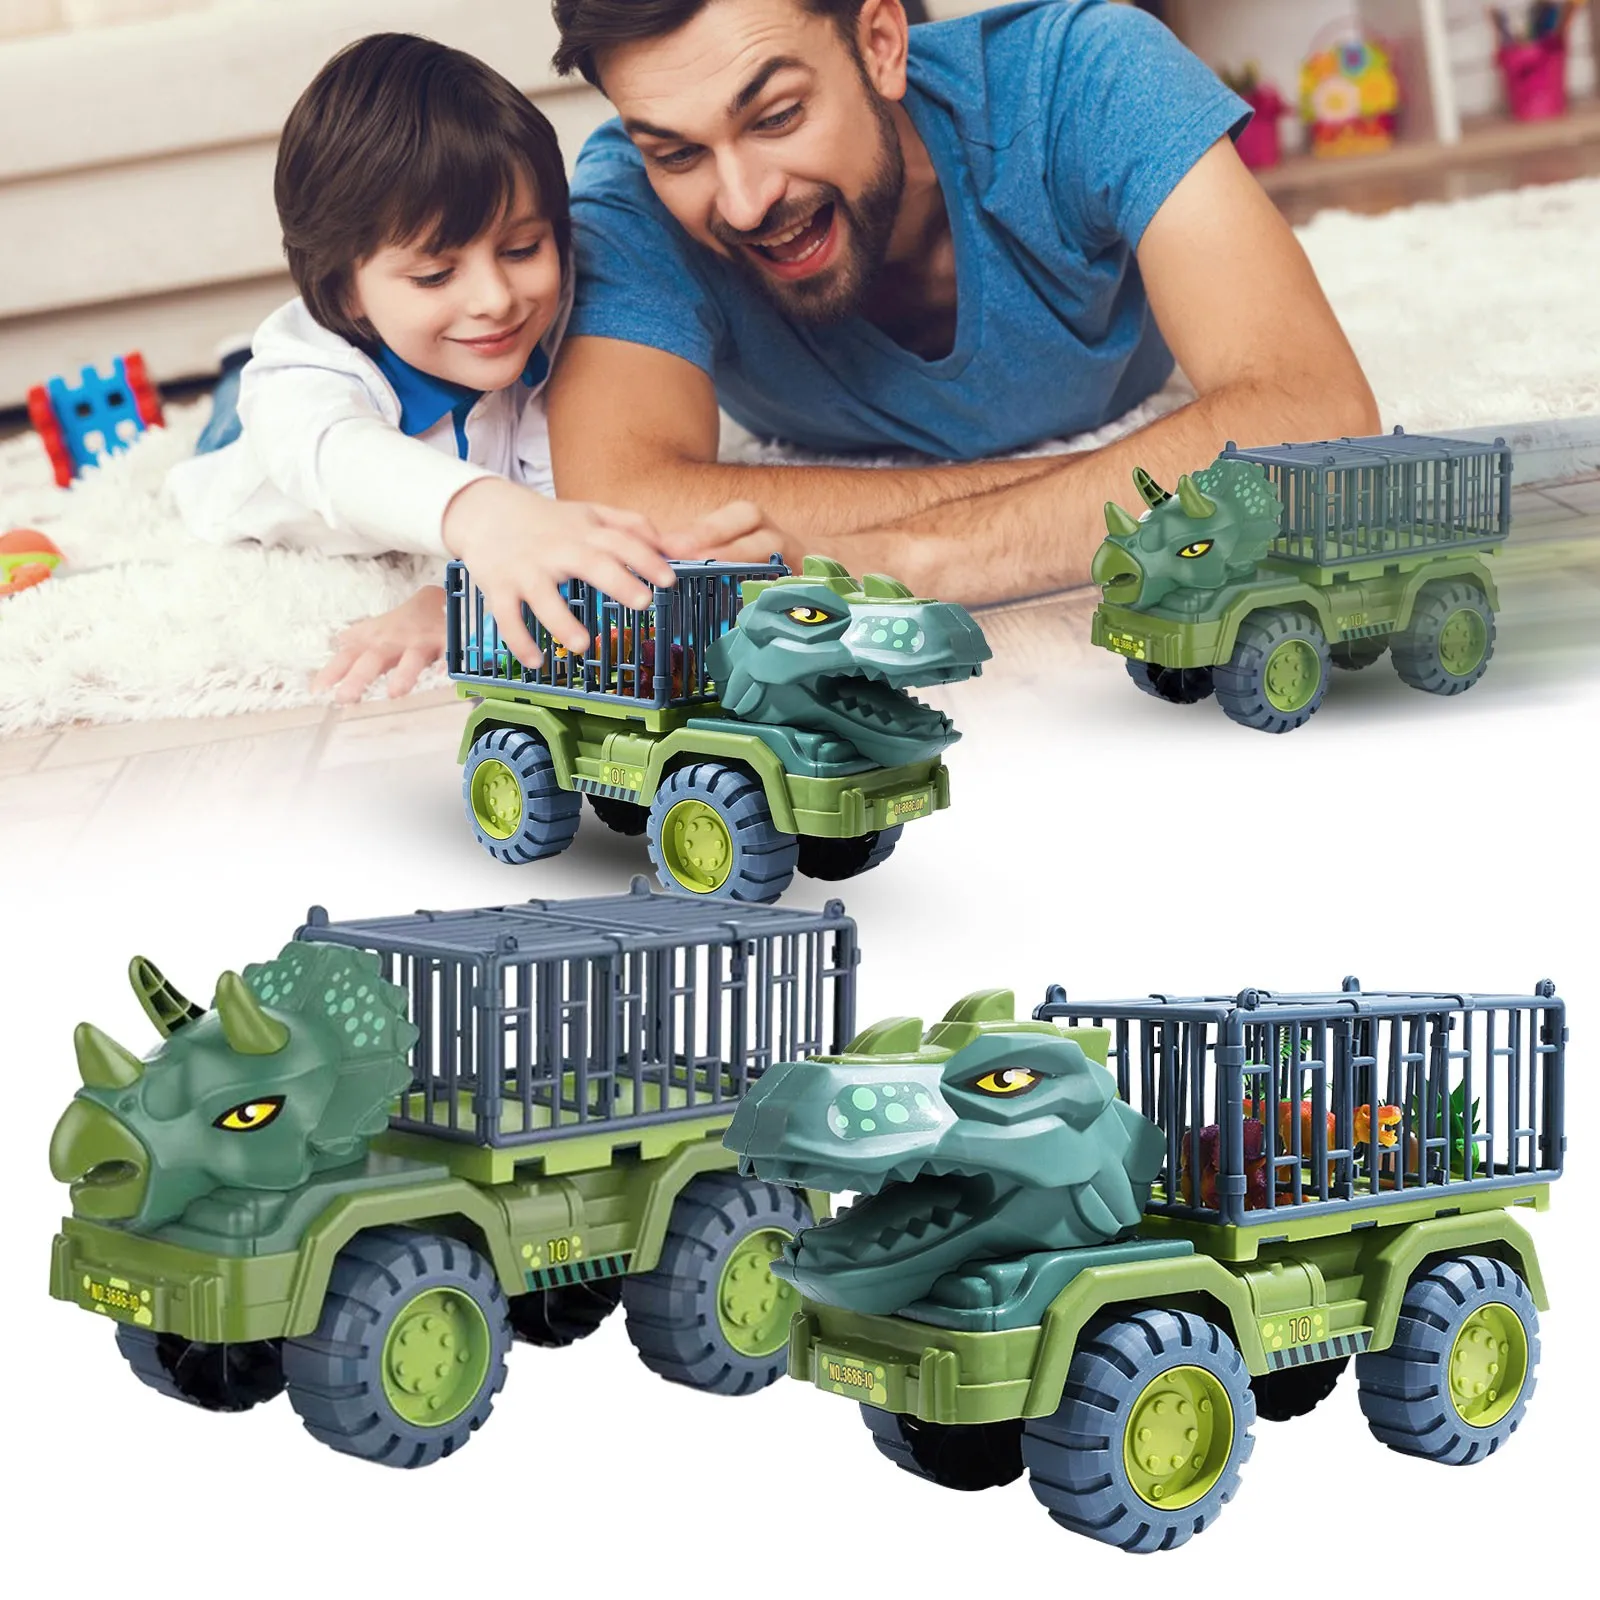 

Автомобильная игрушка, Большой инерционный динозавр, транспортный автомобиль-переносчик, грузовик, игрушечный автомобиль, игрушка с диноз...